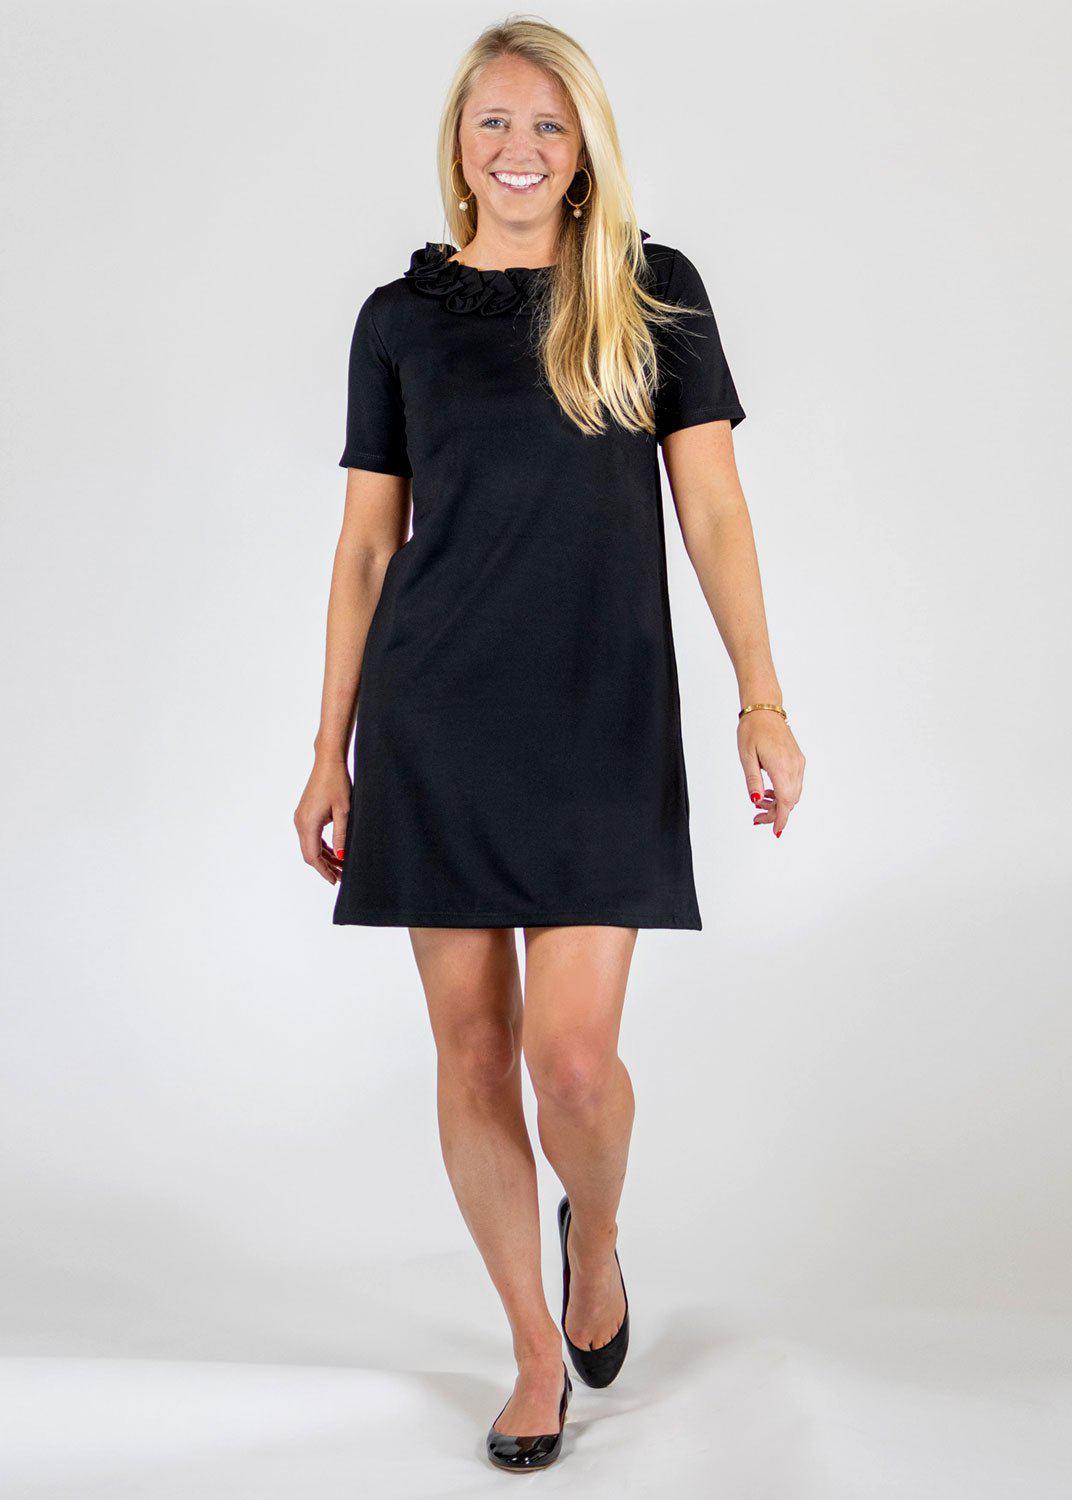 Kimmy Dress - Solid Black